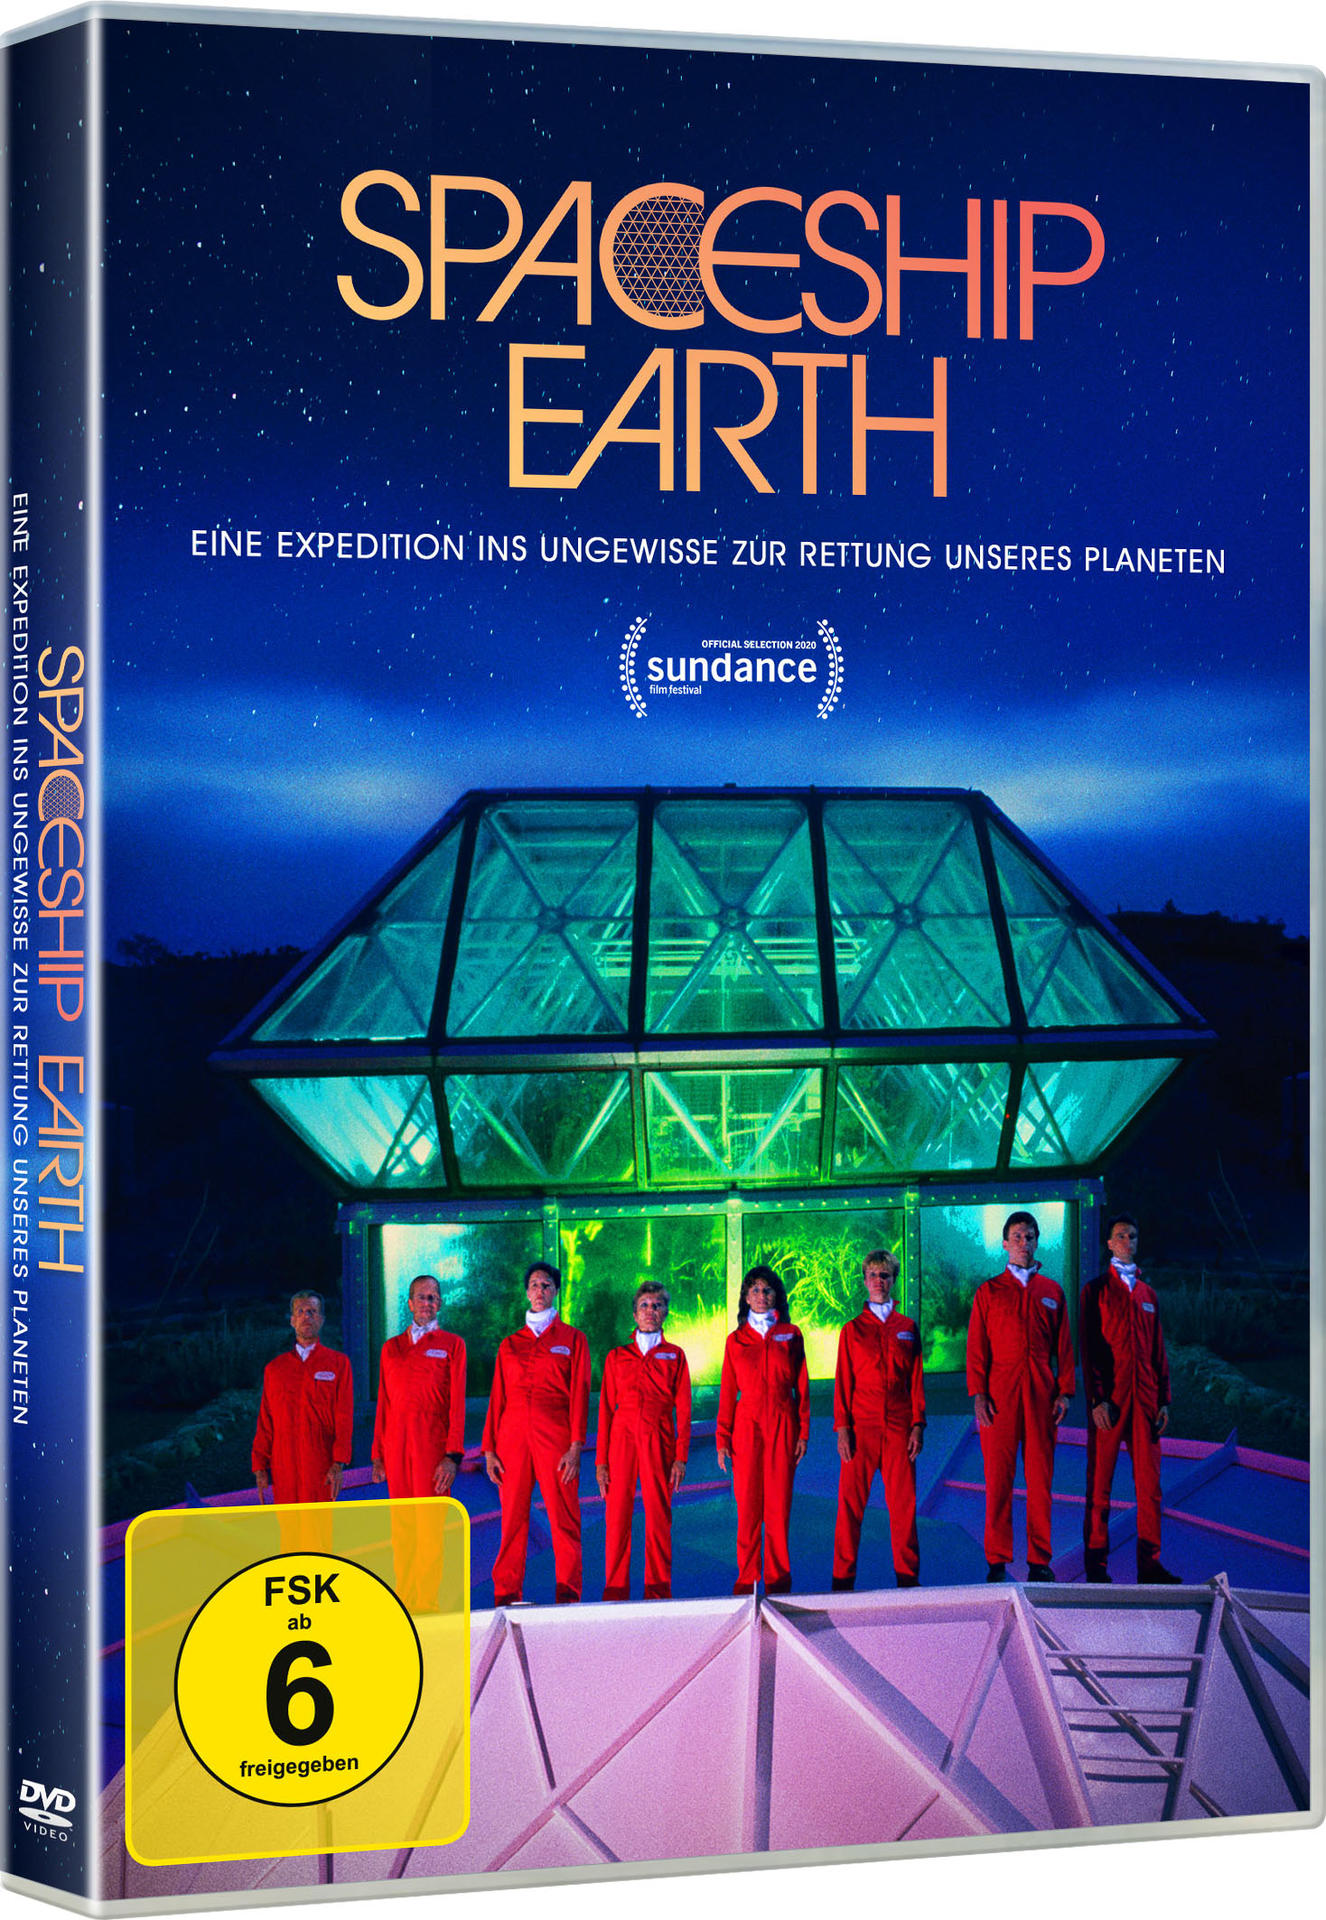 DVD Earth Spaceship